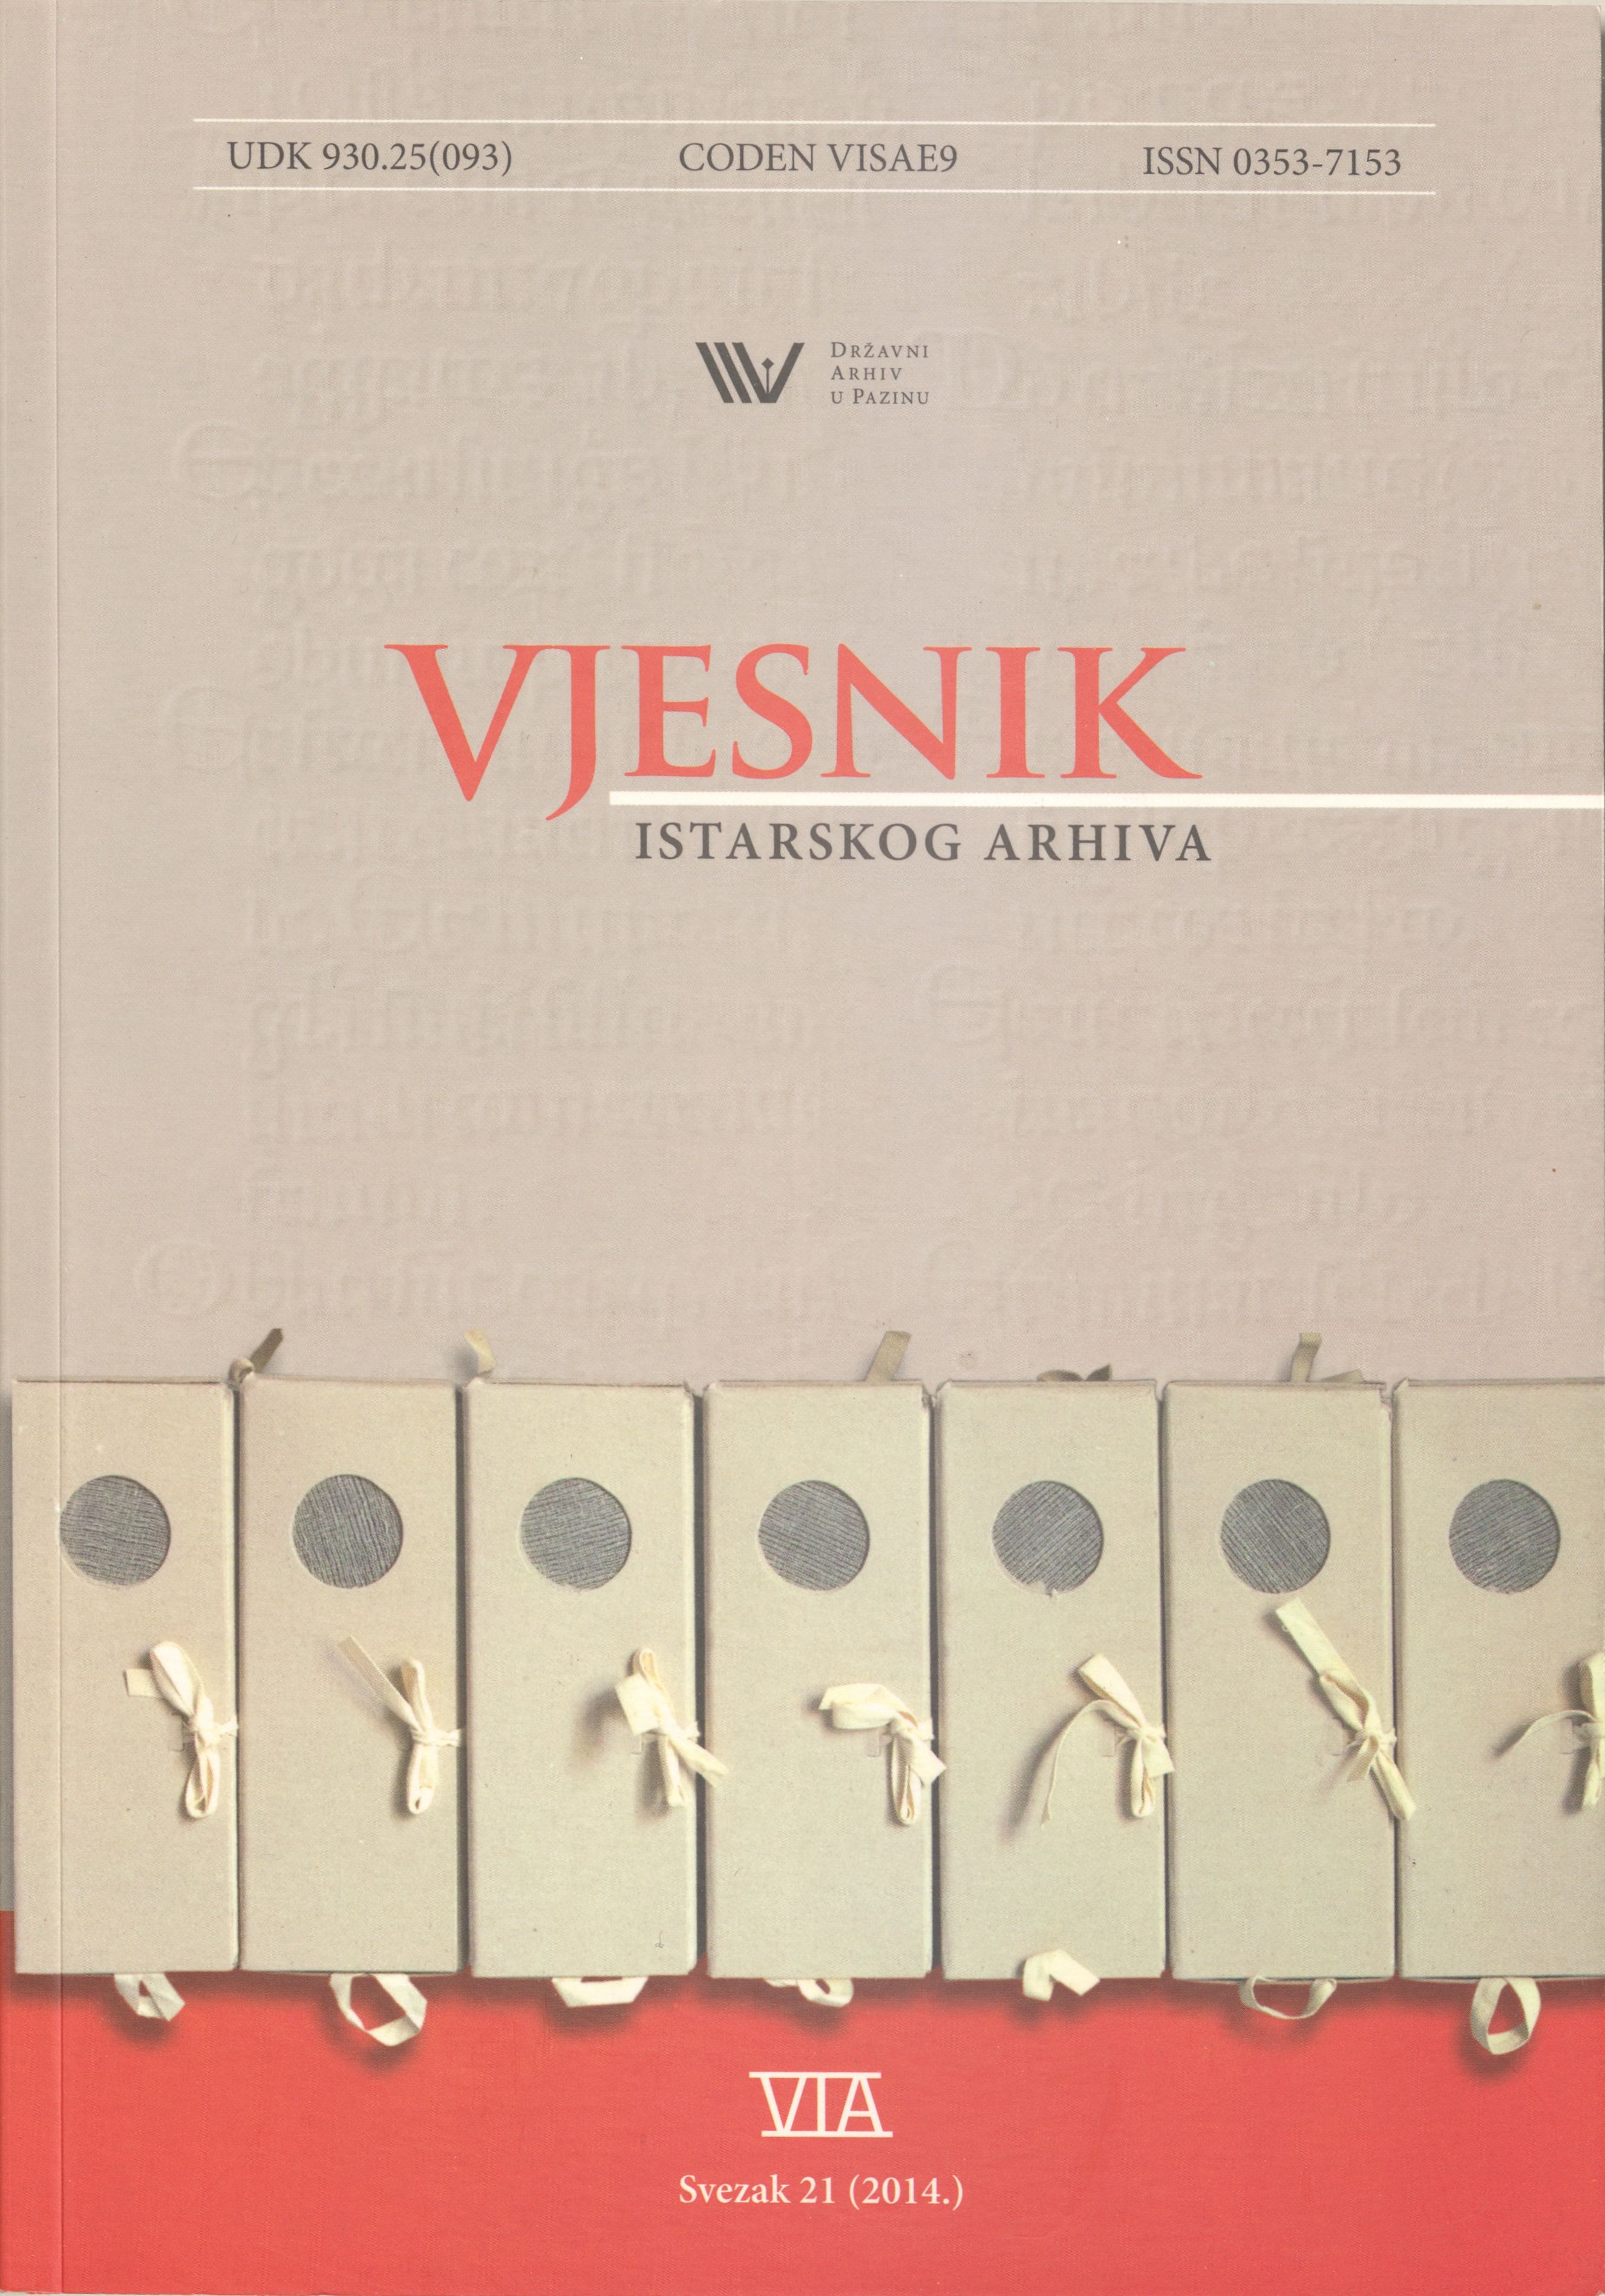 					Visualizza Vjesnik istarskog arhiva sv. 21 (2014.)
				